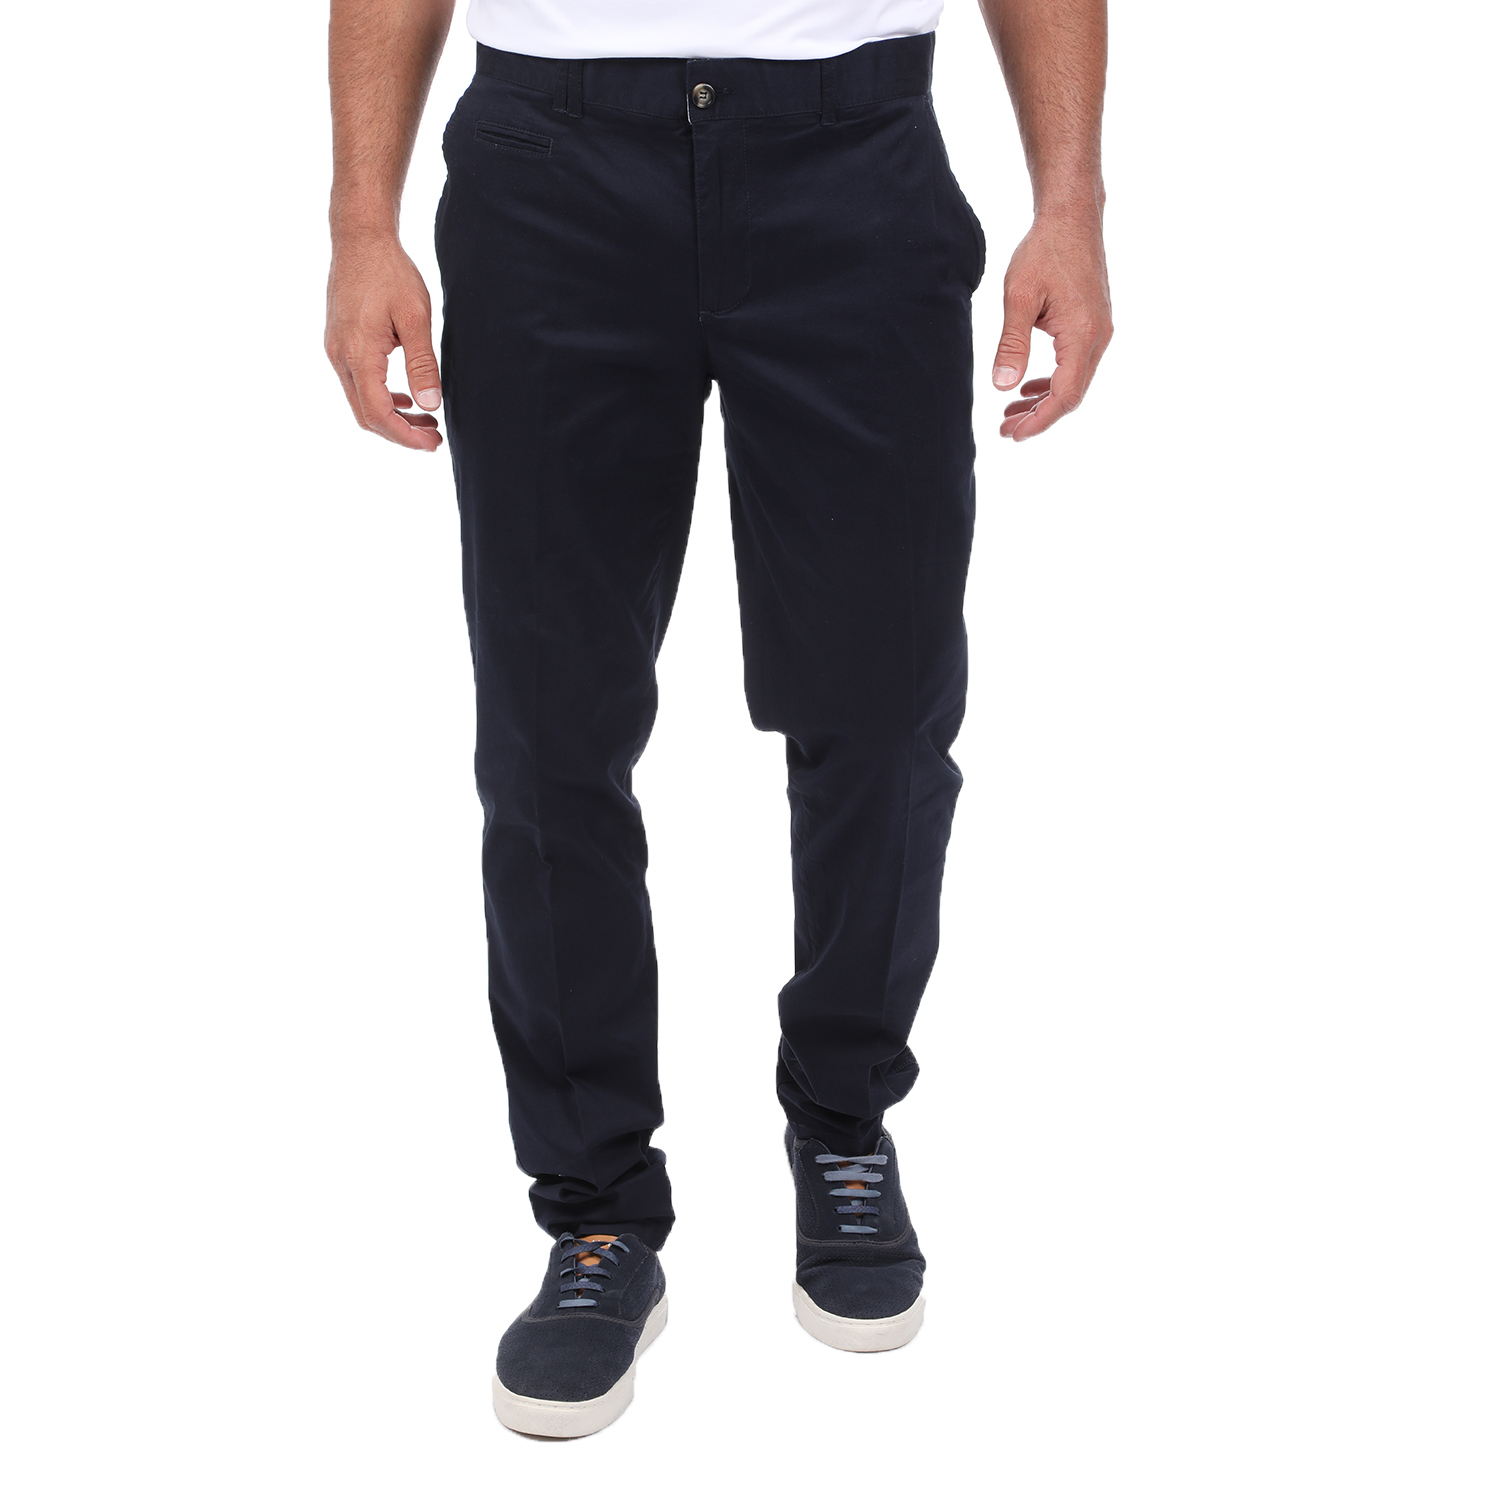 Ανδρικά/Ρούχα/Παντελόνια/Chinos MARTIN & CO - Ανδρικό chino παντελόνι MARTIN & CO SLIM μπλε